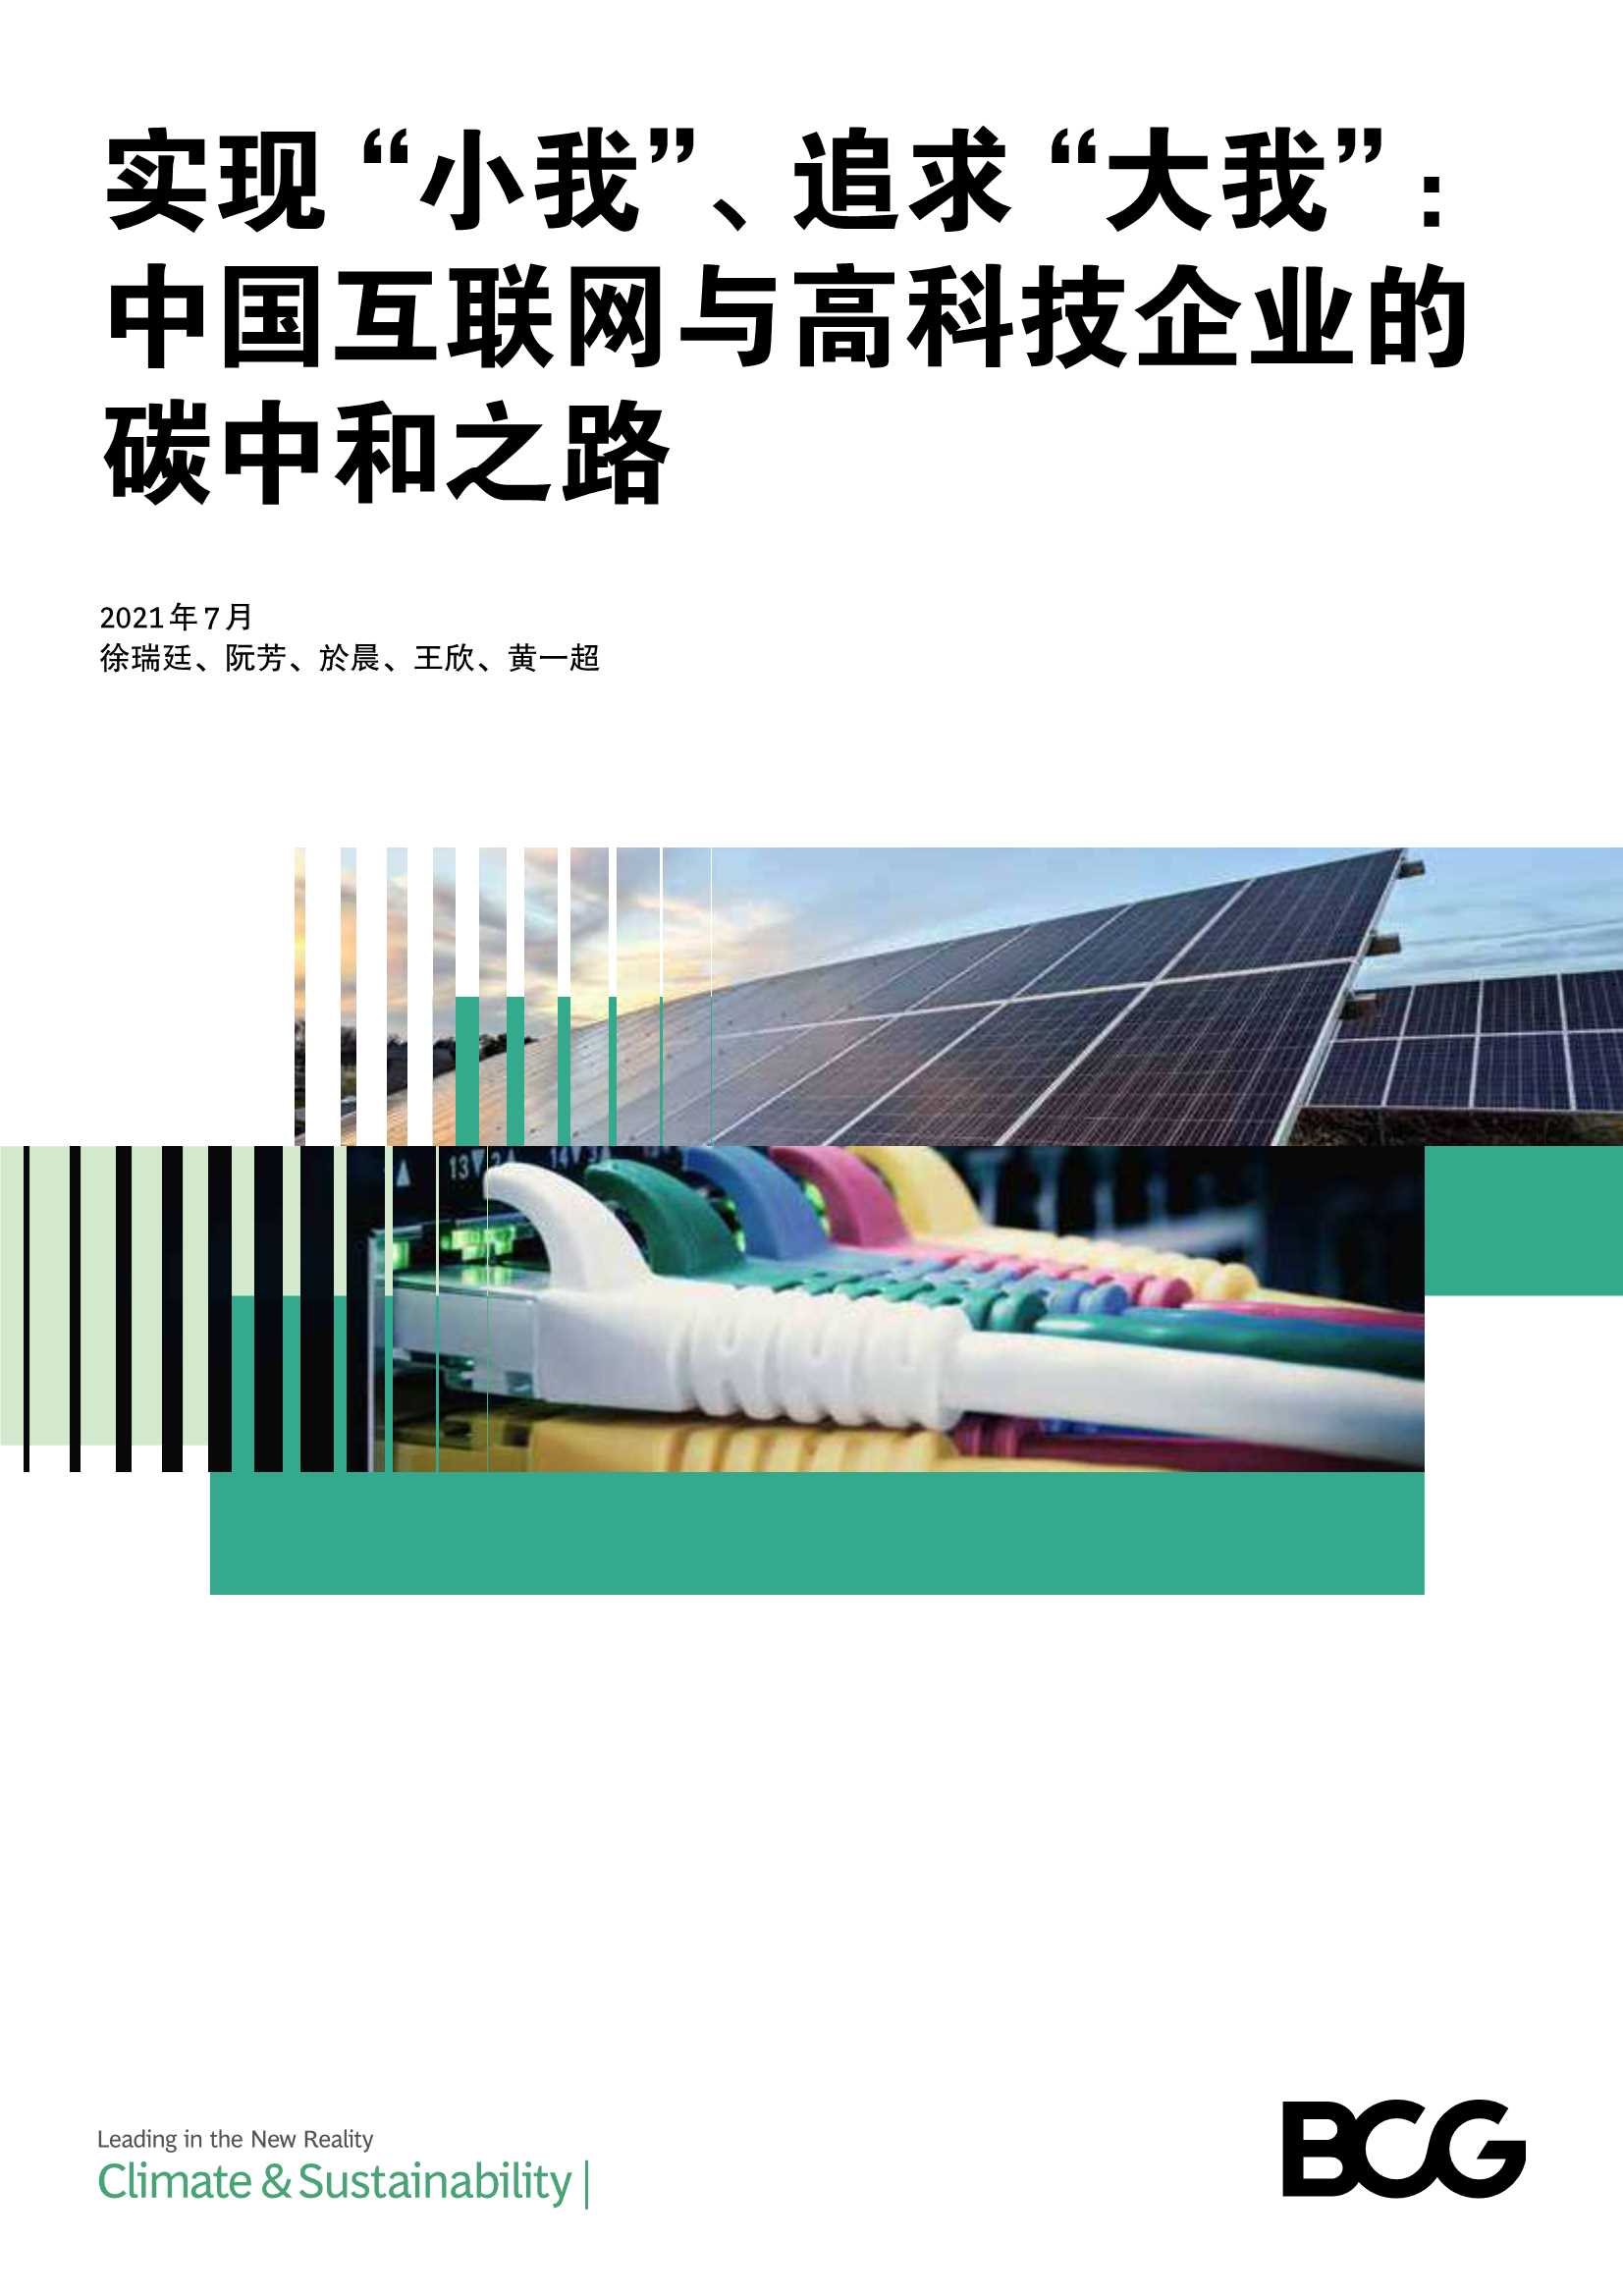 中国互联网与高科技企业的碳中和之路-2021.07-12页